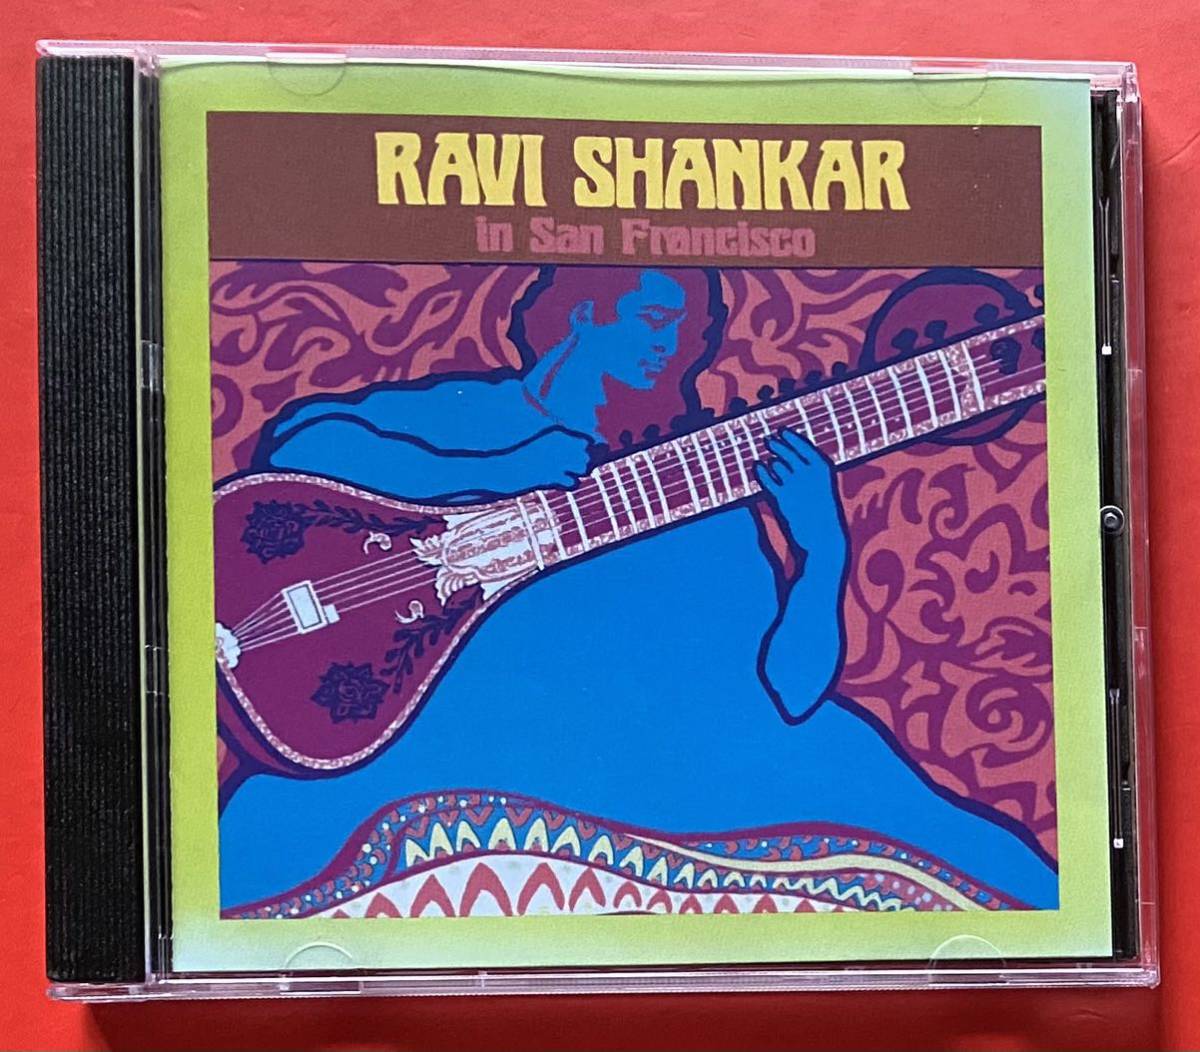 【CD】「RAVI SHANKAR IN SAN FRANCISCO」ラヴィ・シャンカル 輸入盤 [10090650]_画像1